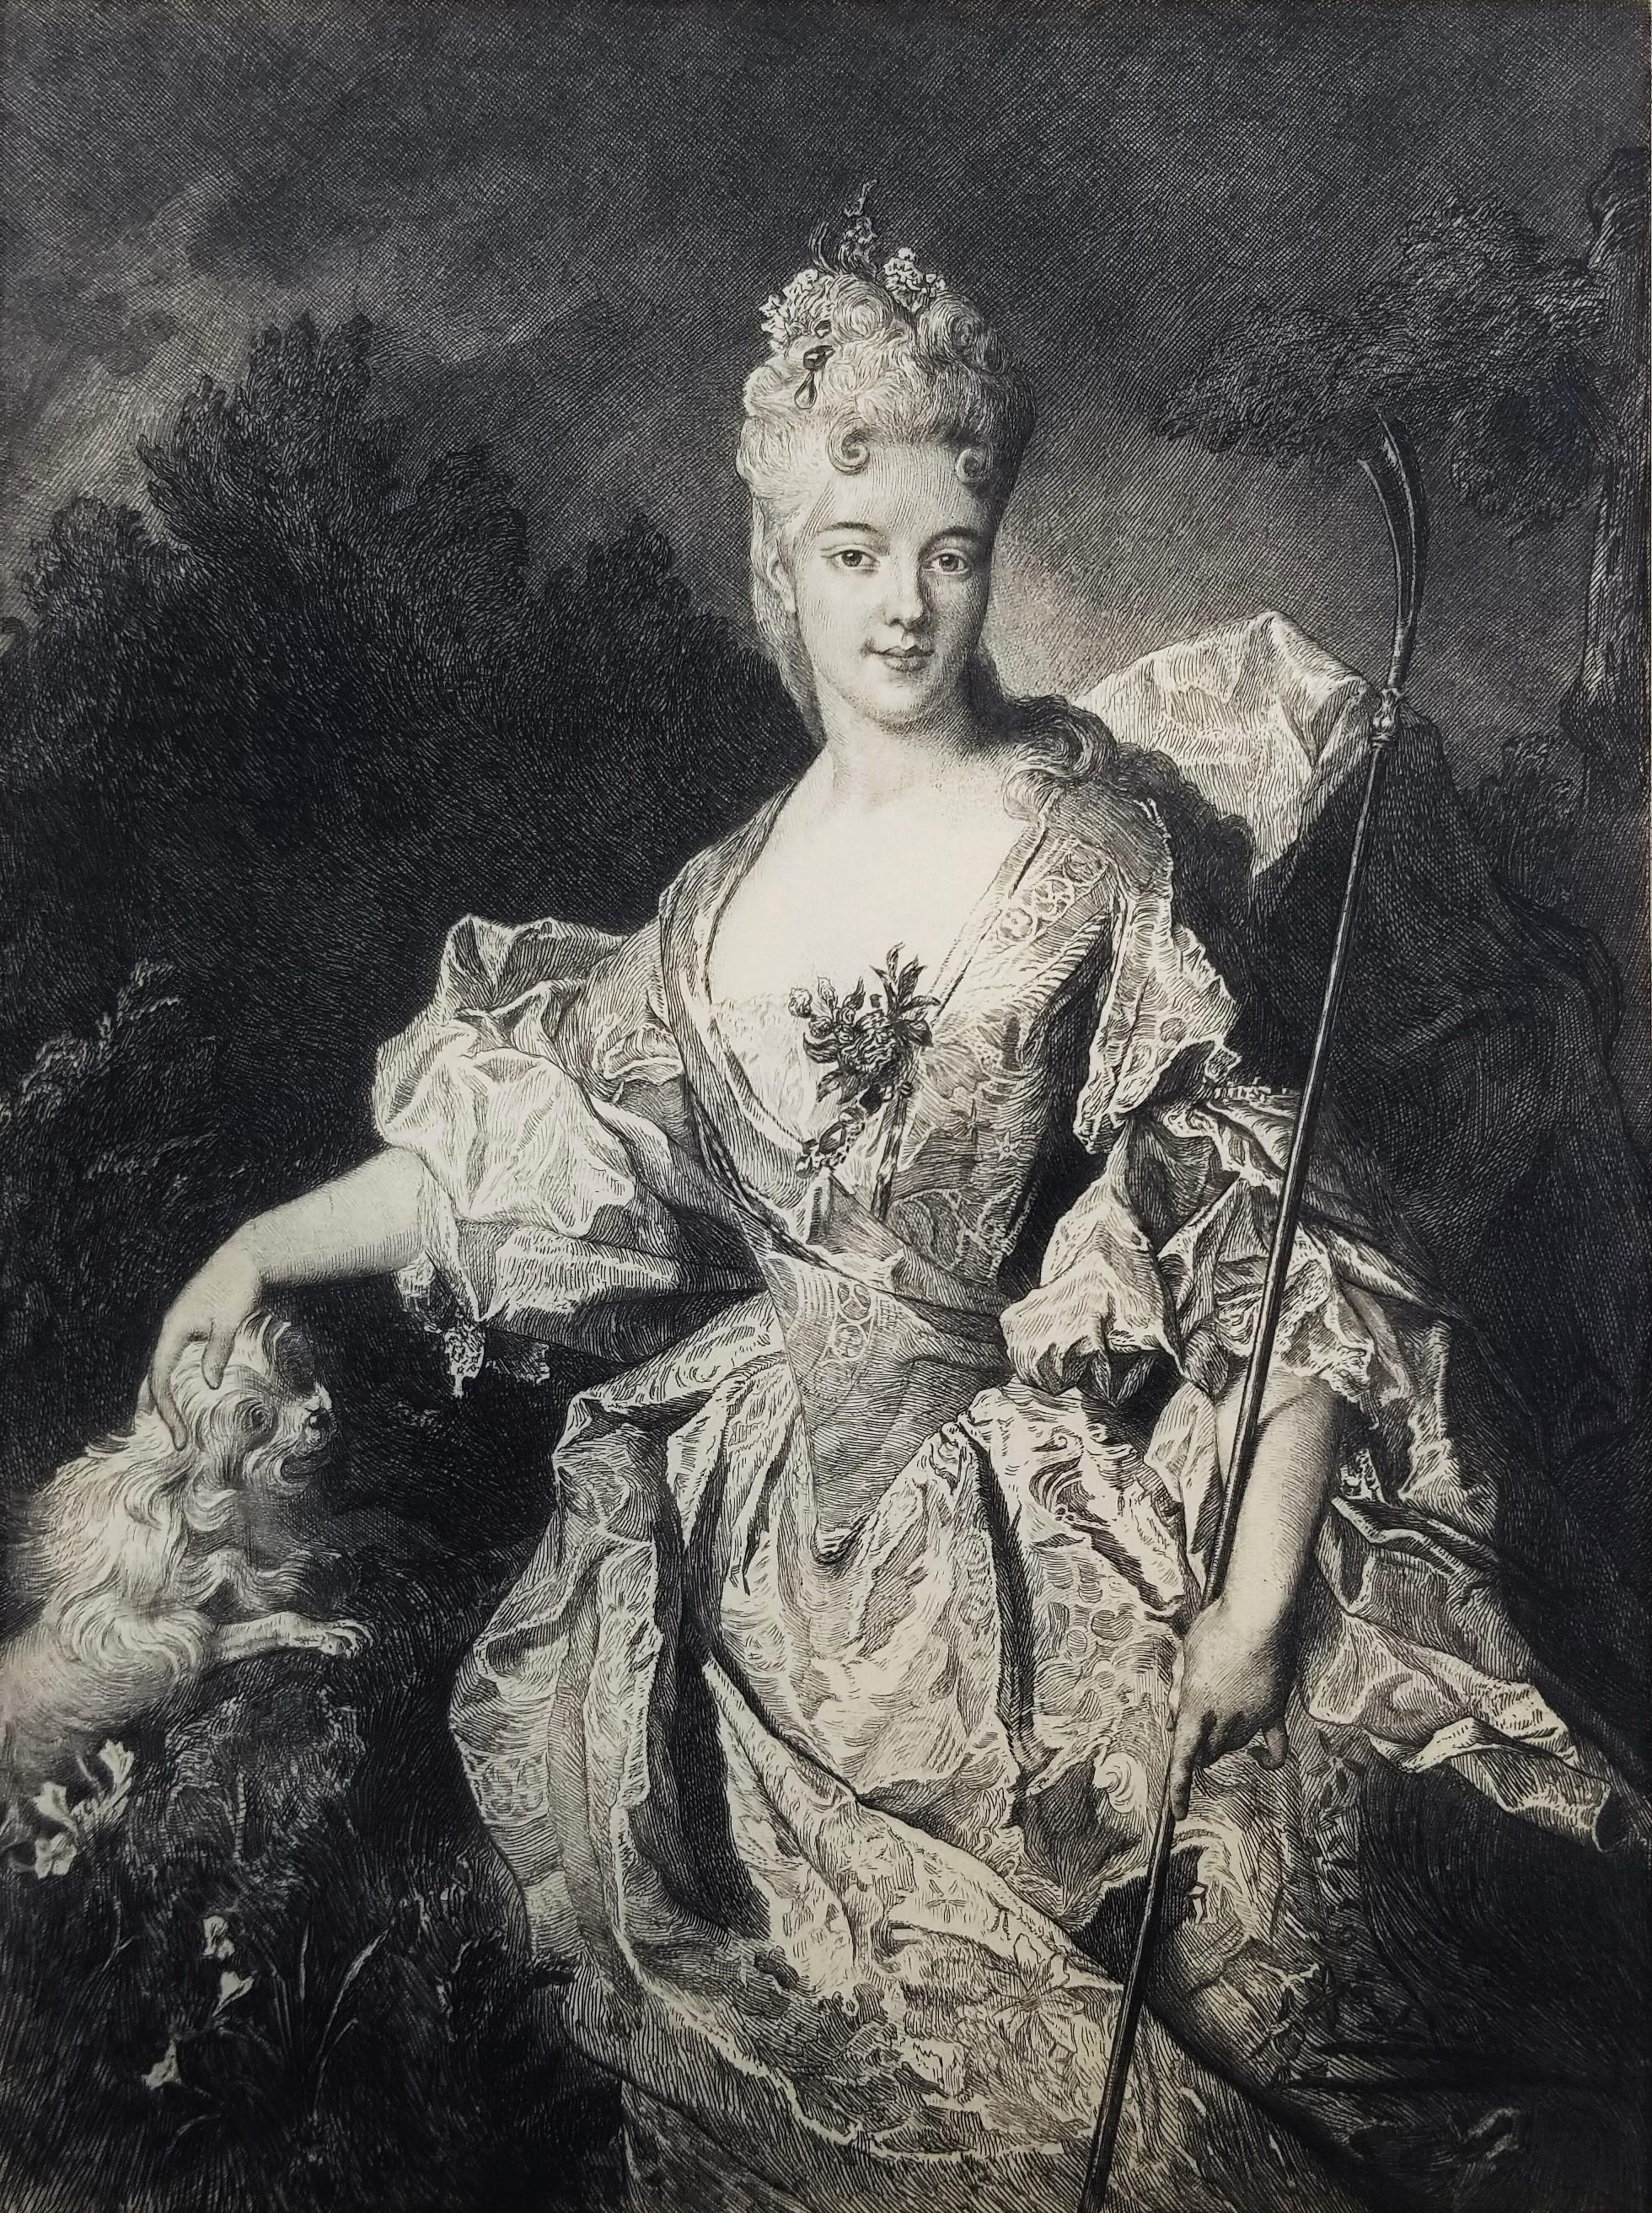 André-Charles Coppier Portrait Print - La Dame a la Houlette (The Lady at the Houlette)